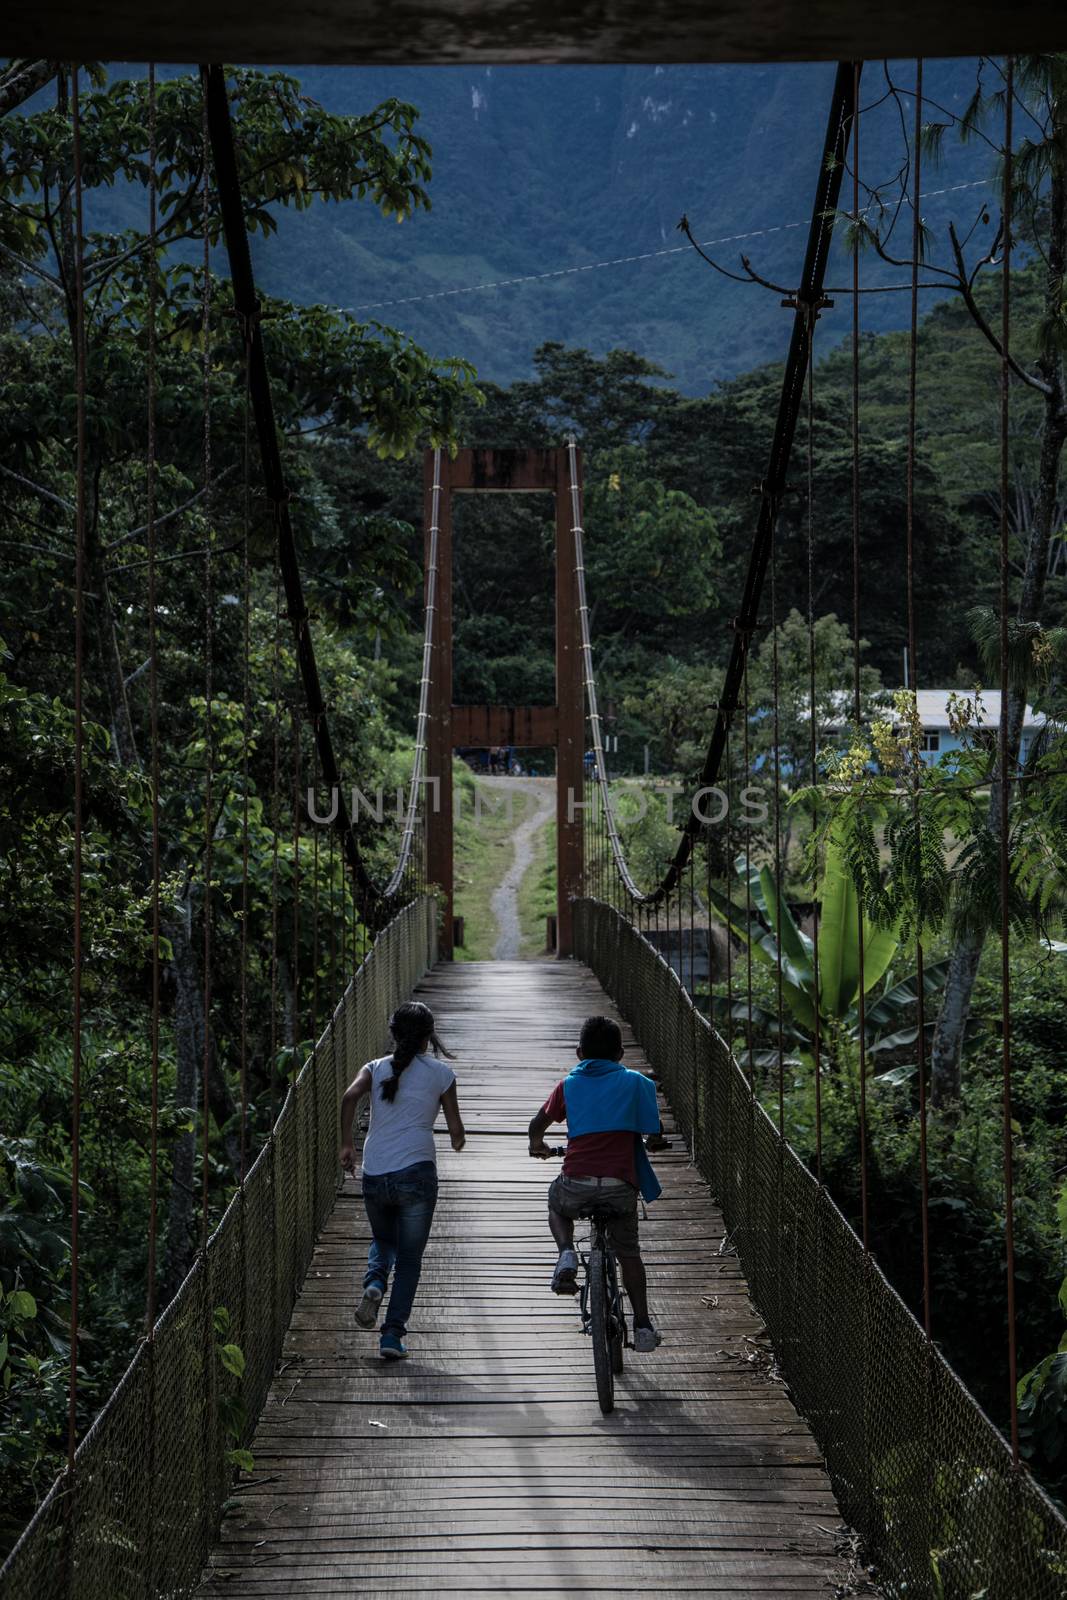 Children crossing the La Cañera pedestrian bridge located in Oxapampa - Peru